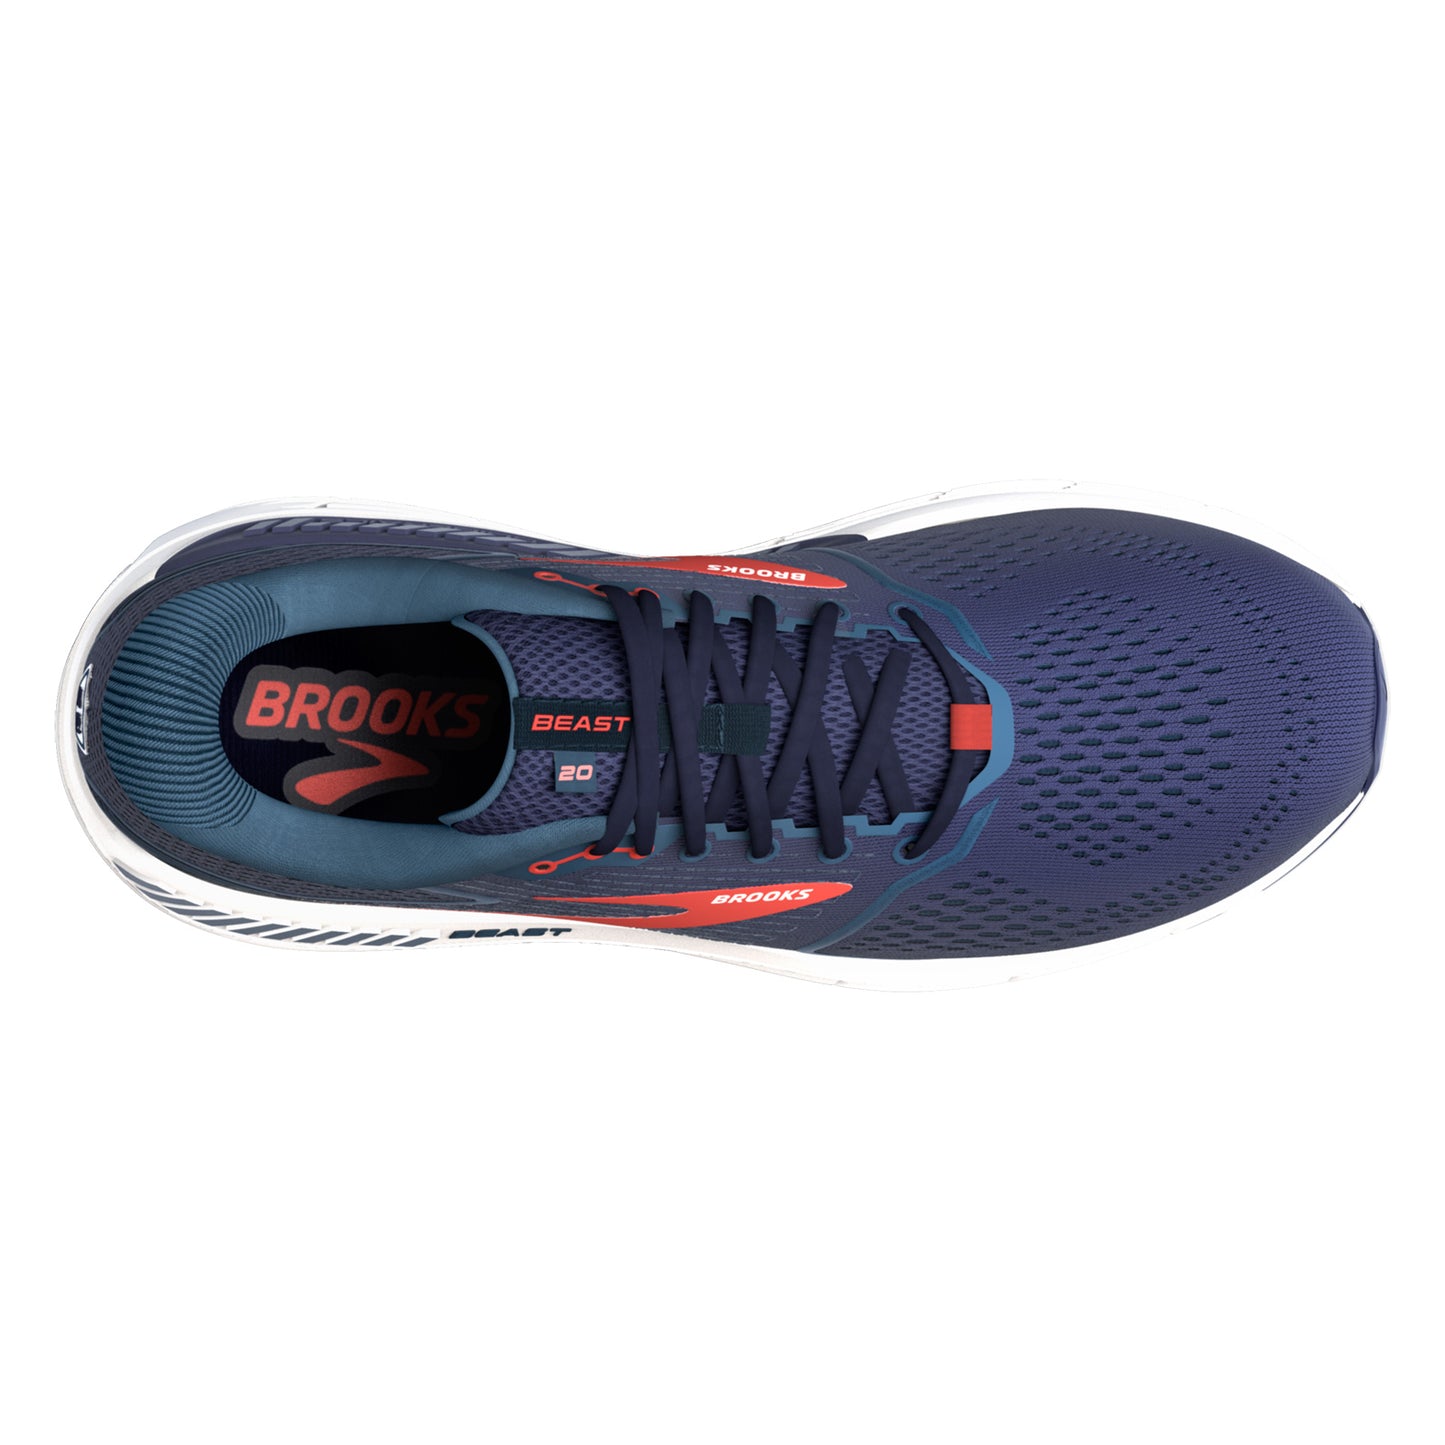 Peltz Shoes  Men's Brooks Beast 20 Running Shoe Peacoat/Midnight/Red 110327 1D 480